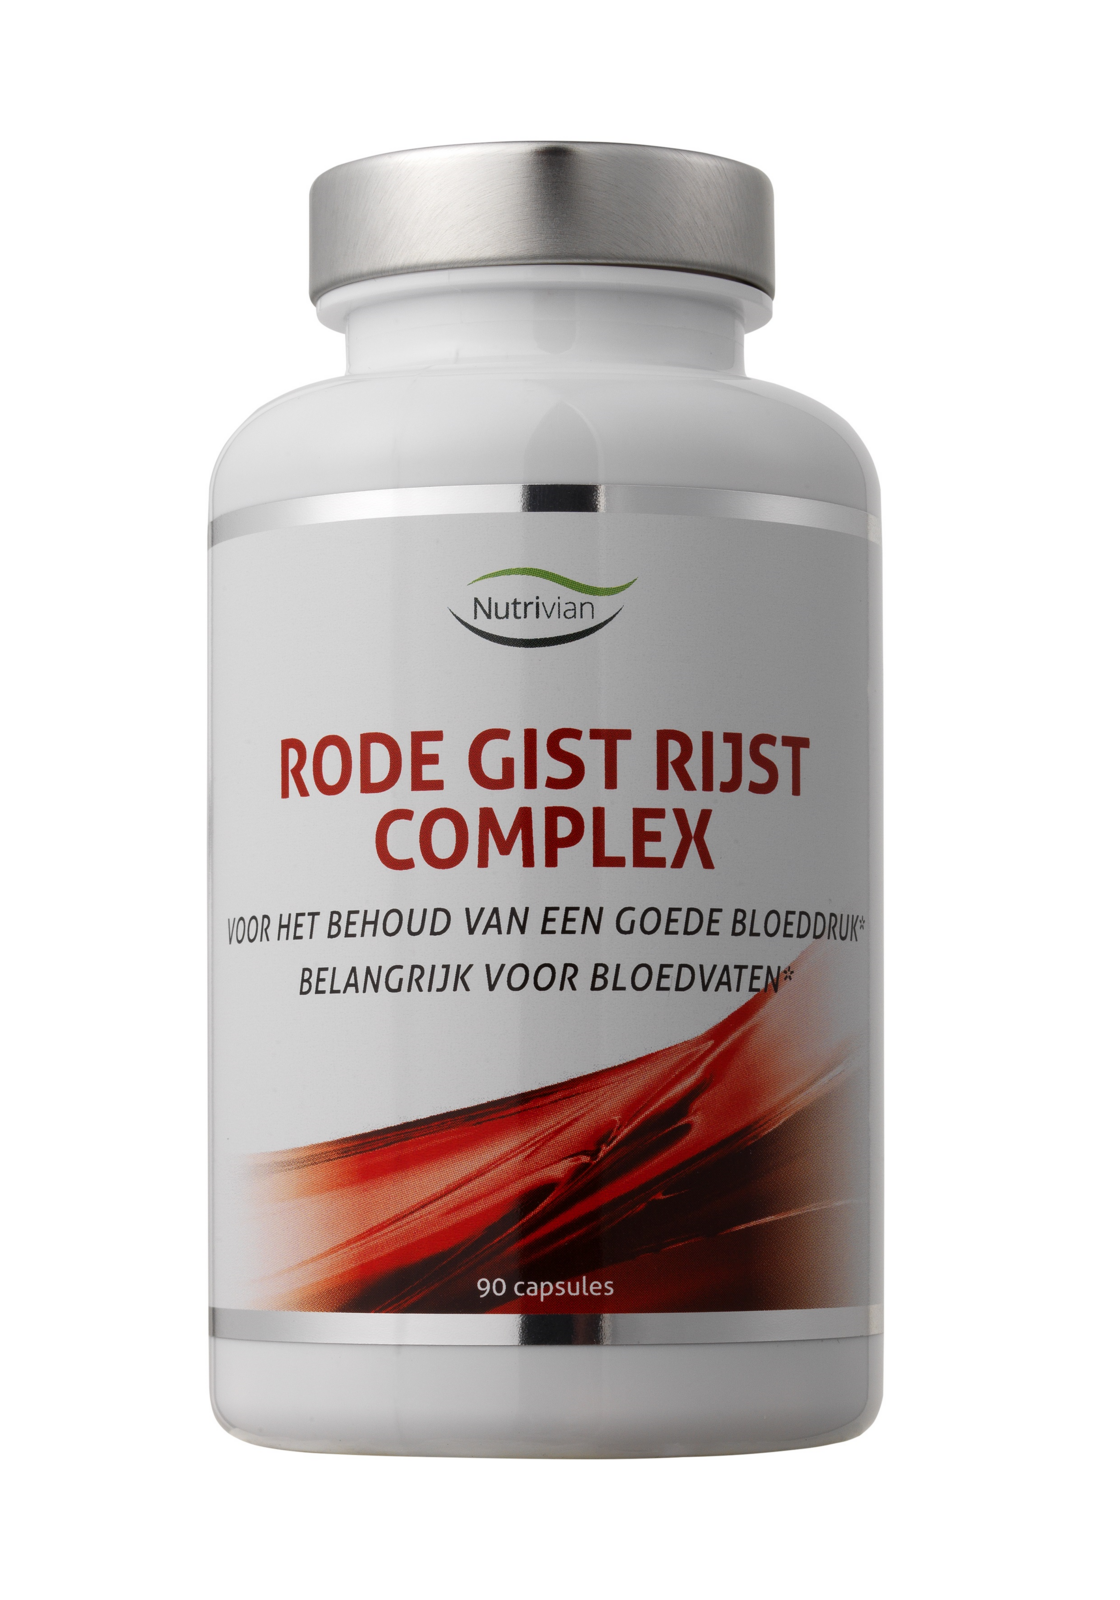 Rode Gist Rijst Complex – Cholesterol Control van Nutrivian (90 stuks) - Bloeddruk - Bloedvaten